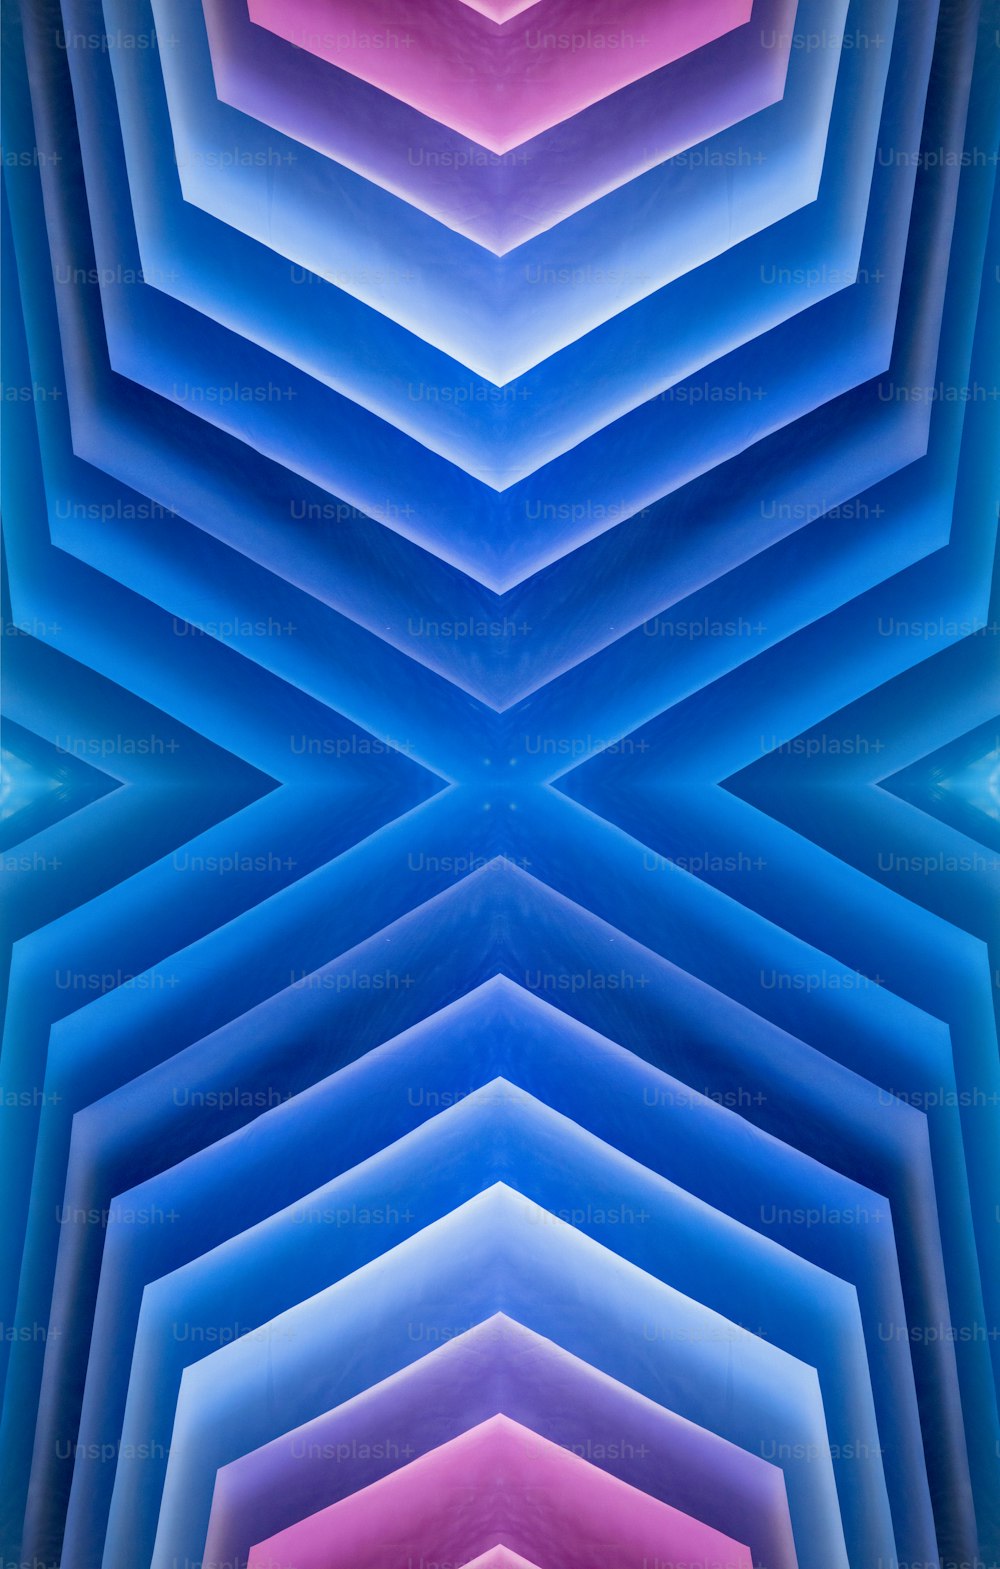 Un'immagine astratta di forme blu, rosa e viola